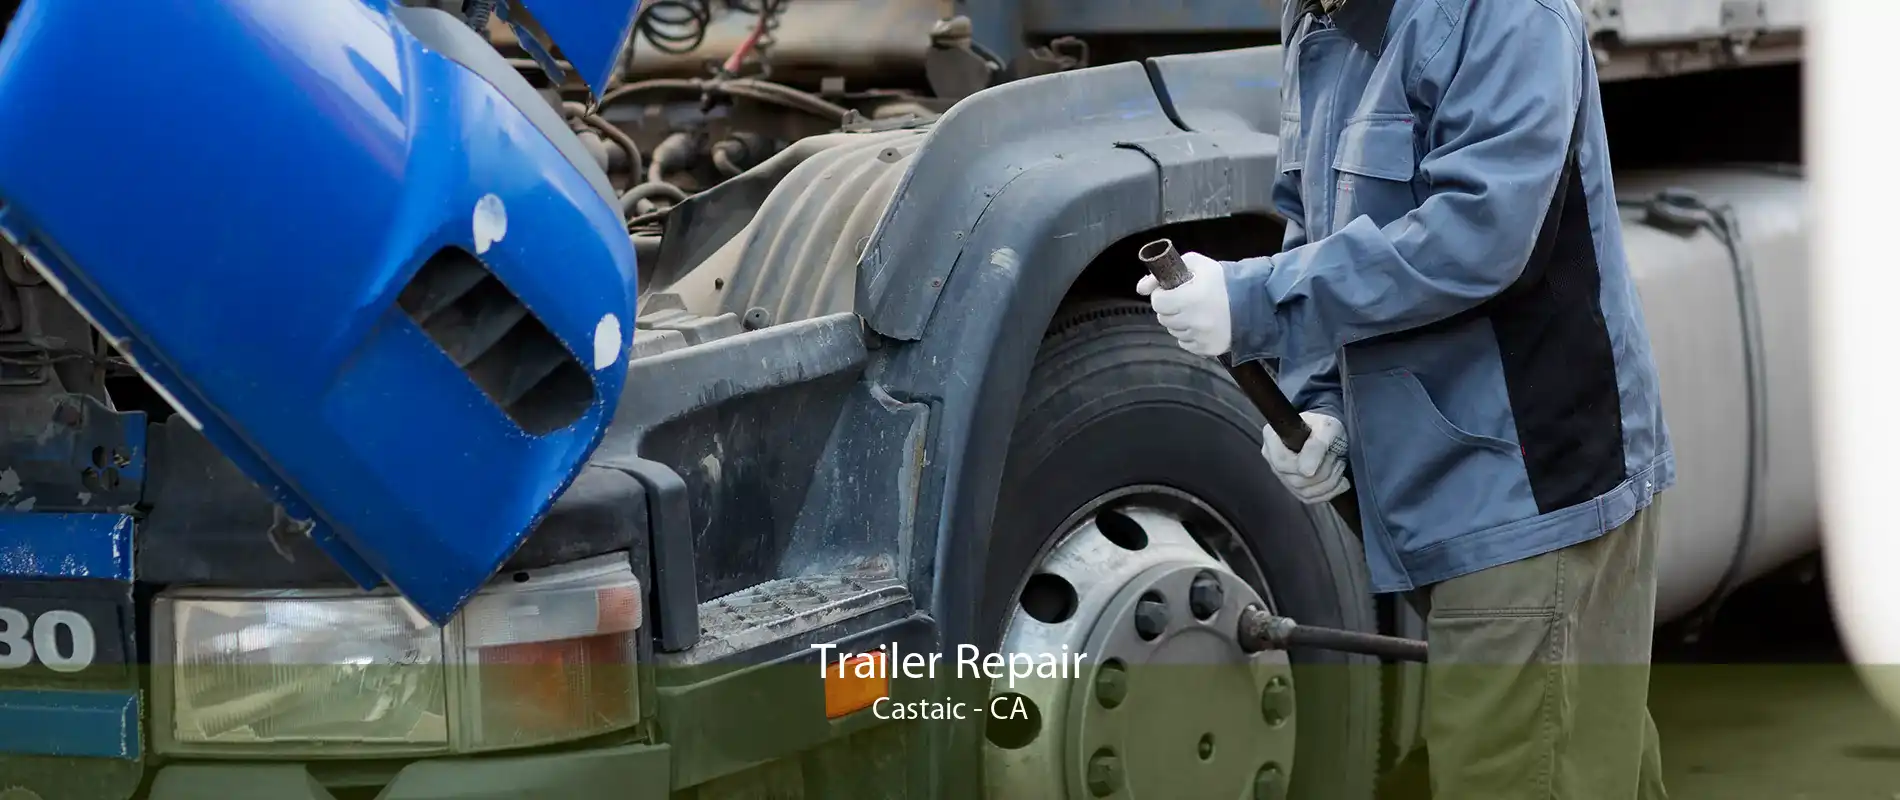 Trailer Repair Castaic - CA